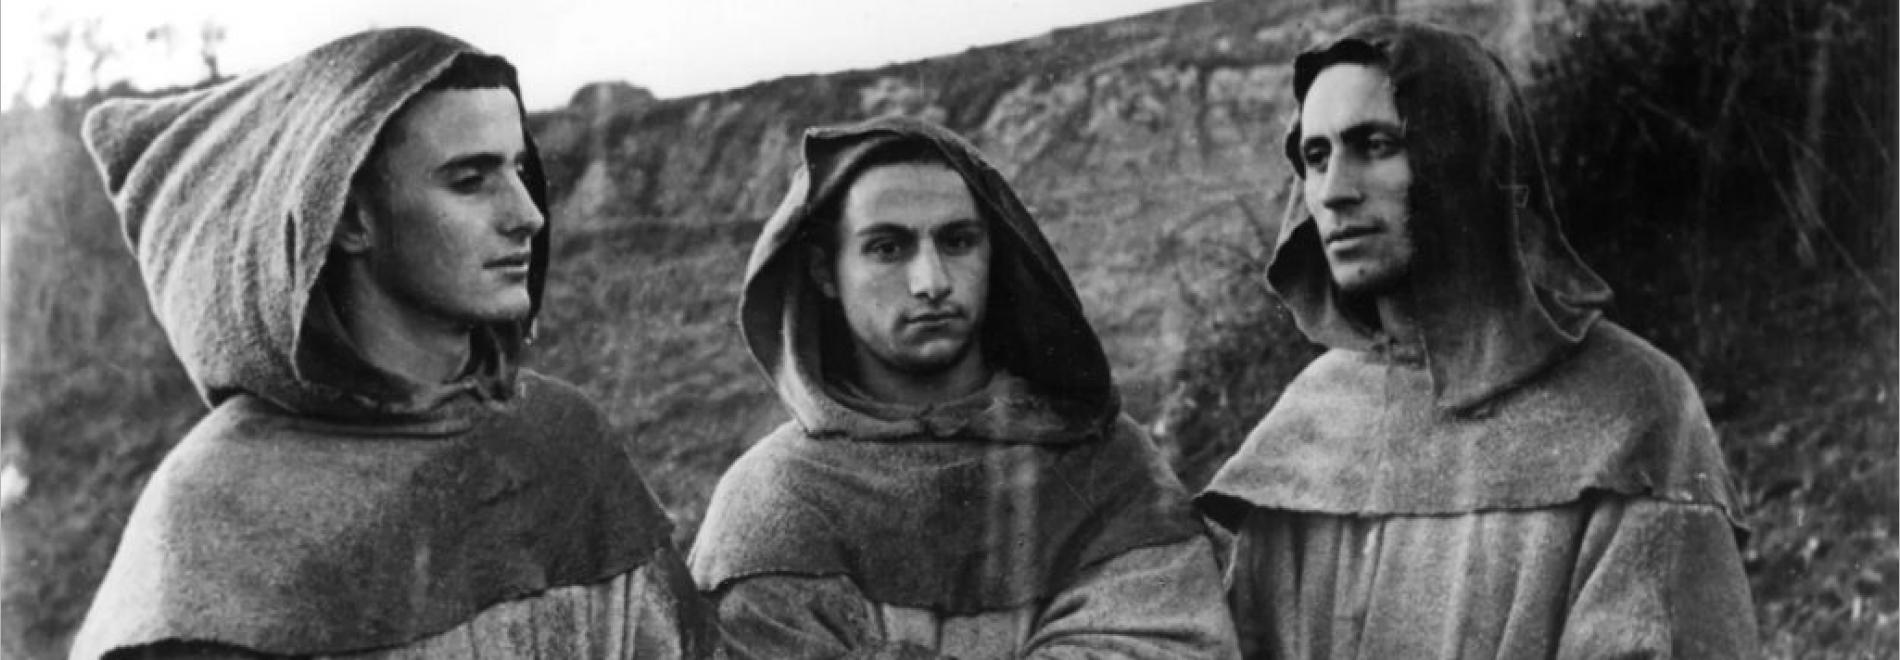 Francesco, giullare di Dio (Roberto Rossellini, 1950)